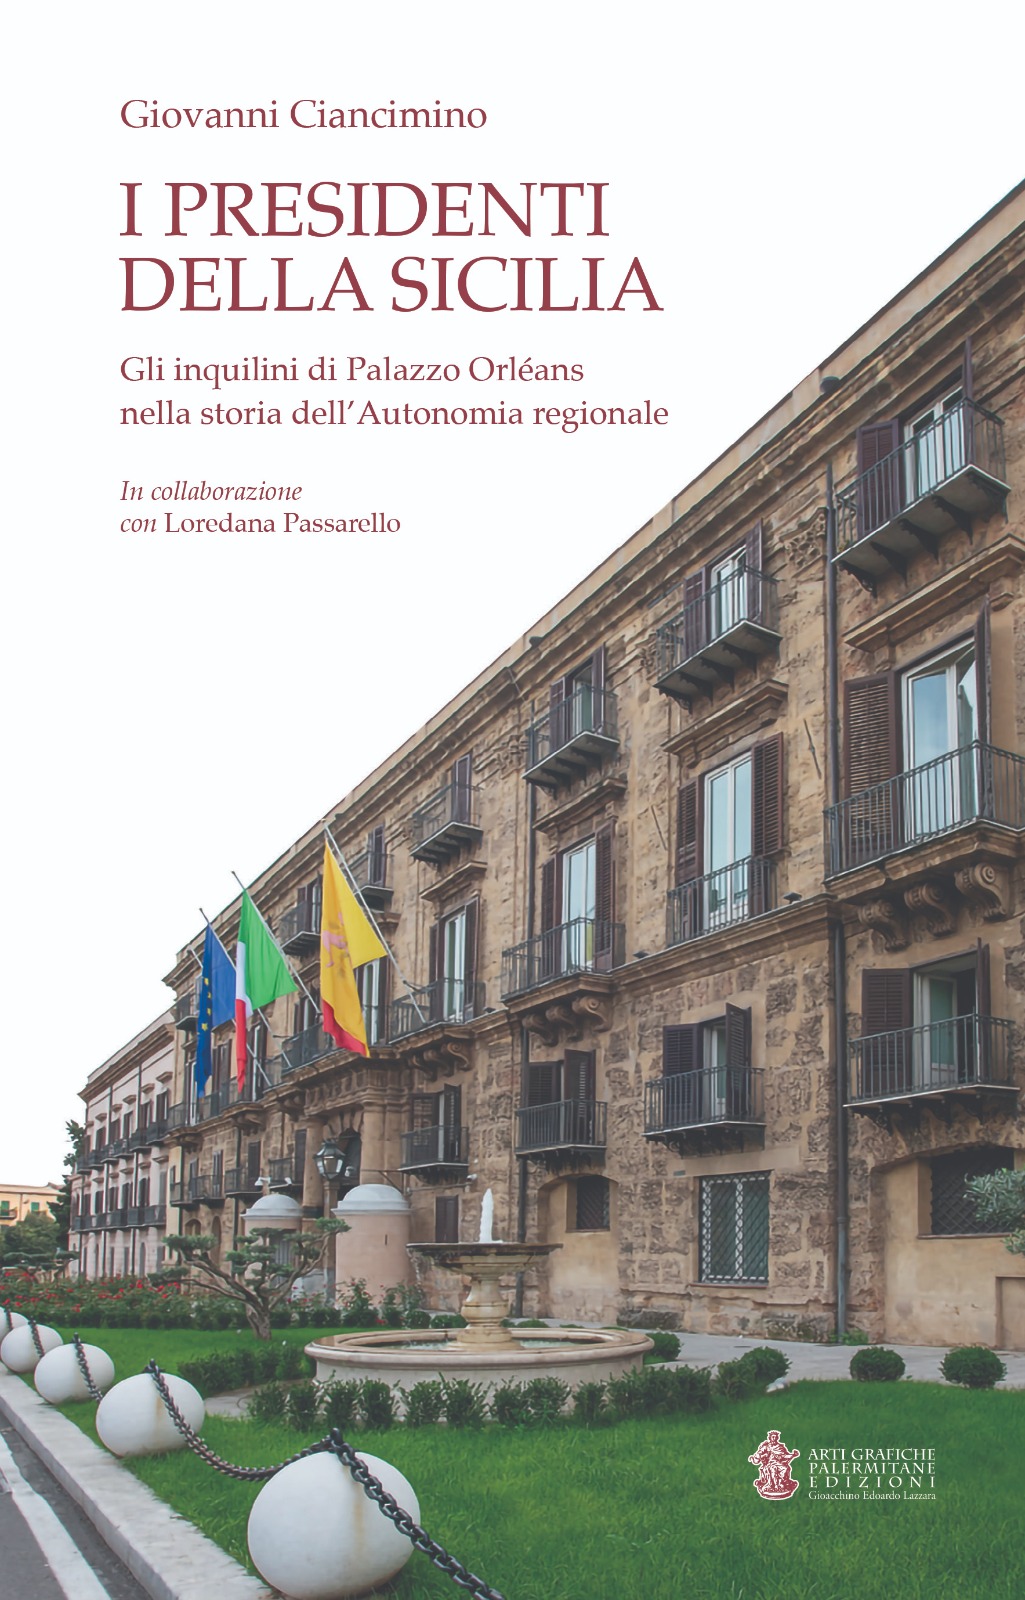 Palermo, Palazzo Orléans, i trenta presidenti della Sicilia in un libro di Giovanni Ciancimino: domani la presentazione a Villa Zito